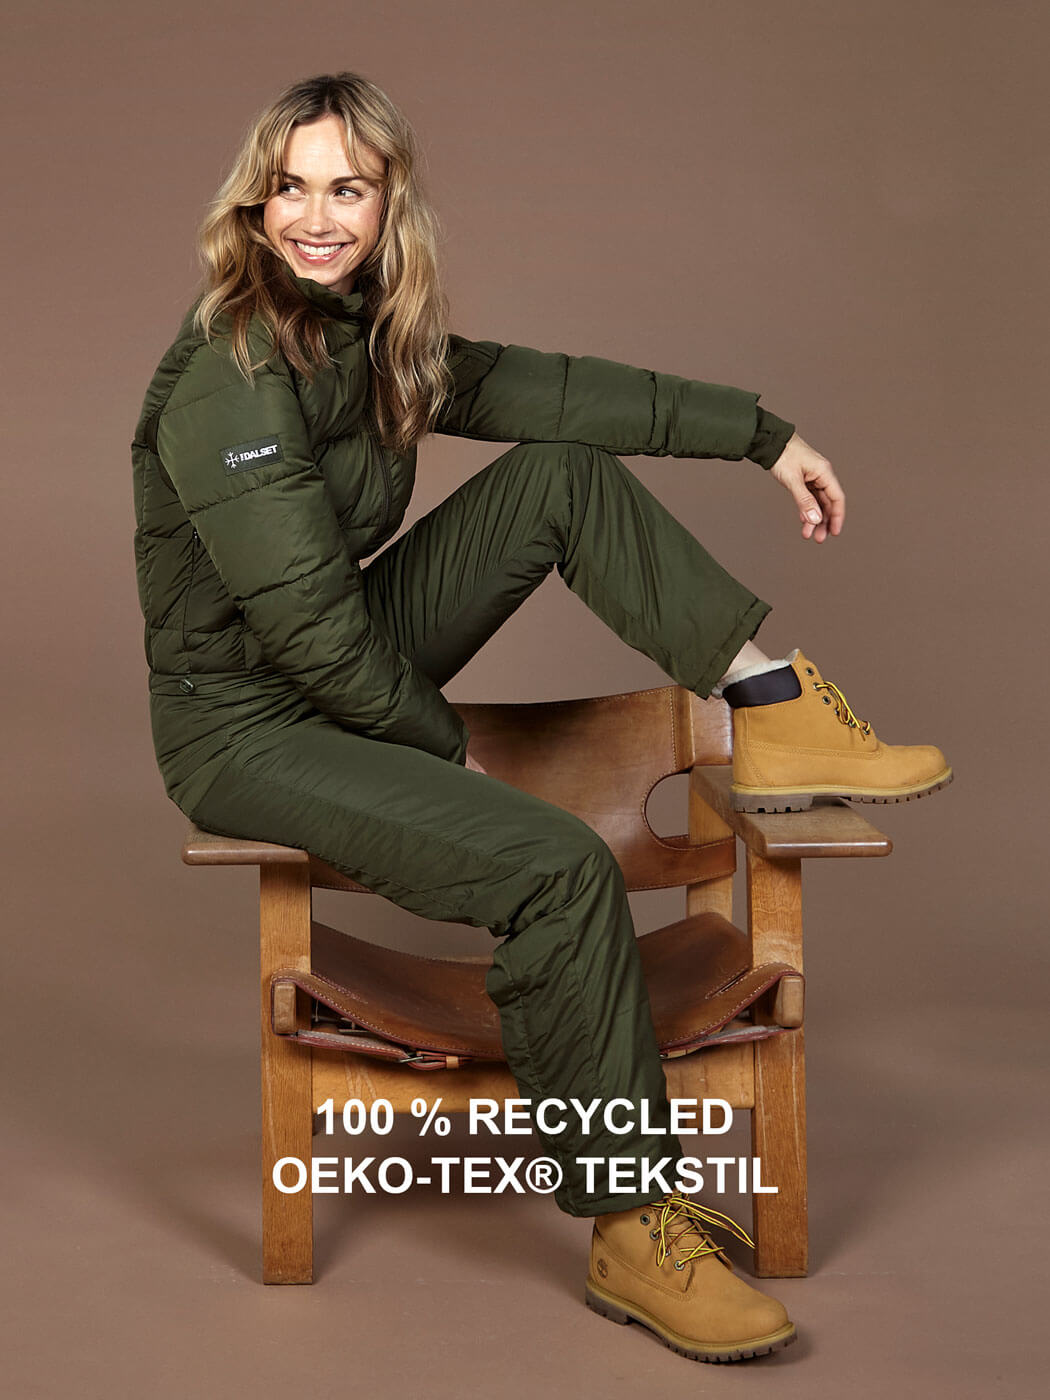 100%-recycled-oeko-tex®-tekstil-flyverdragter-damer-the-dalset